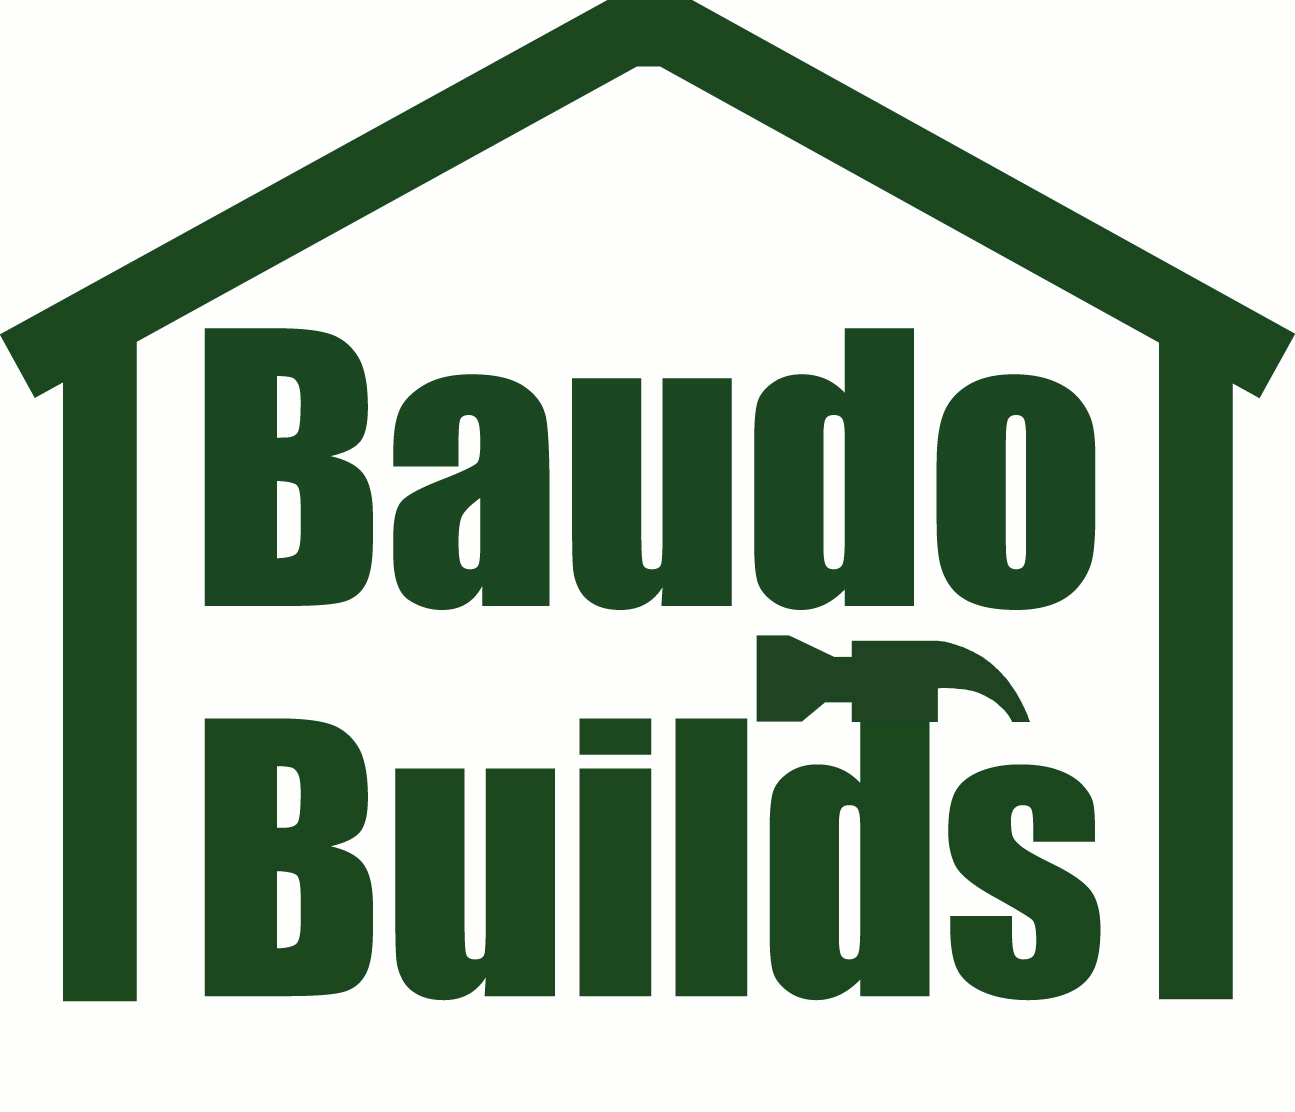 Baudo Builds